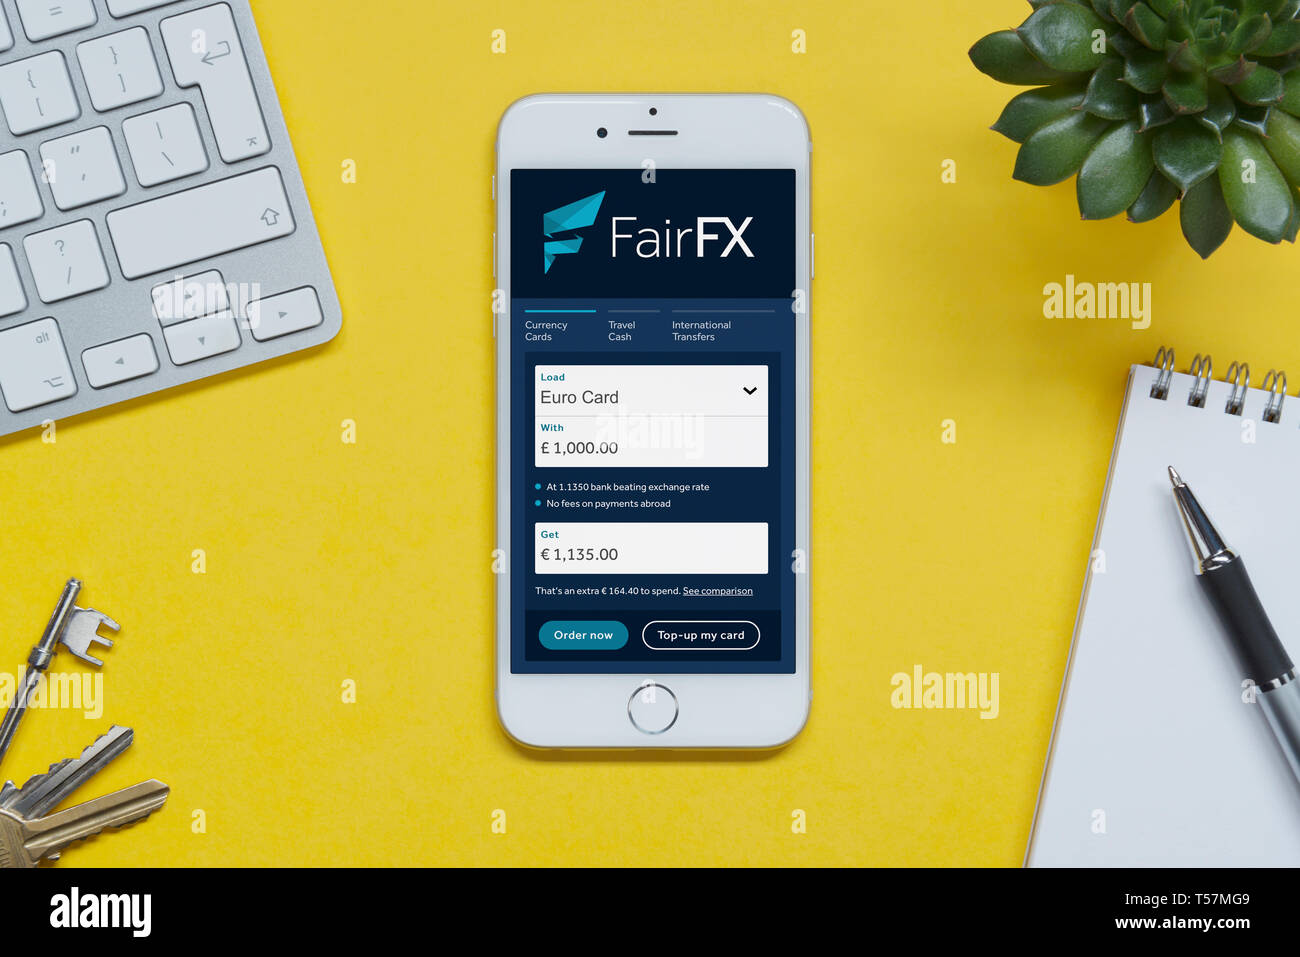 Ein iPhone zeigt die FairFX website ruht auf einem gelben Hintergrund Tabelle mit einer Tastatur, Tasten, Notepad und Anlage (nur redaktionelle Nutzung). Stockfoto